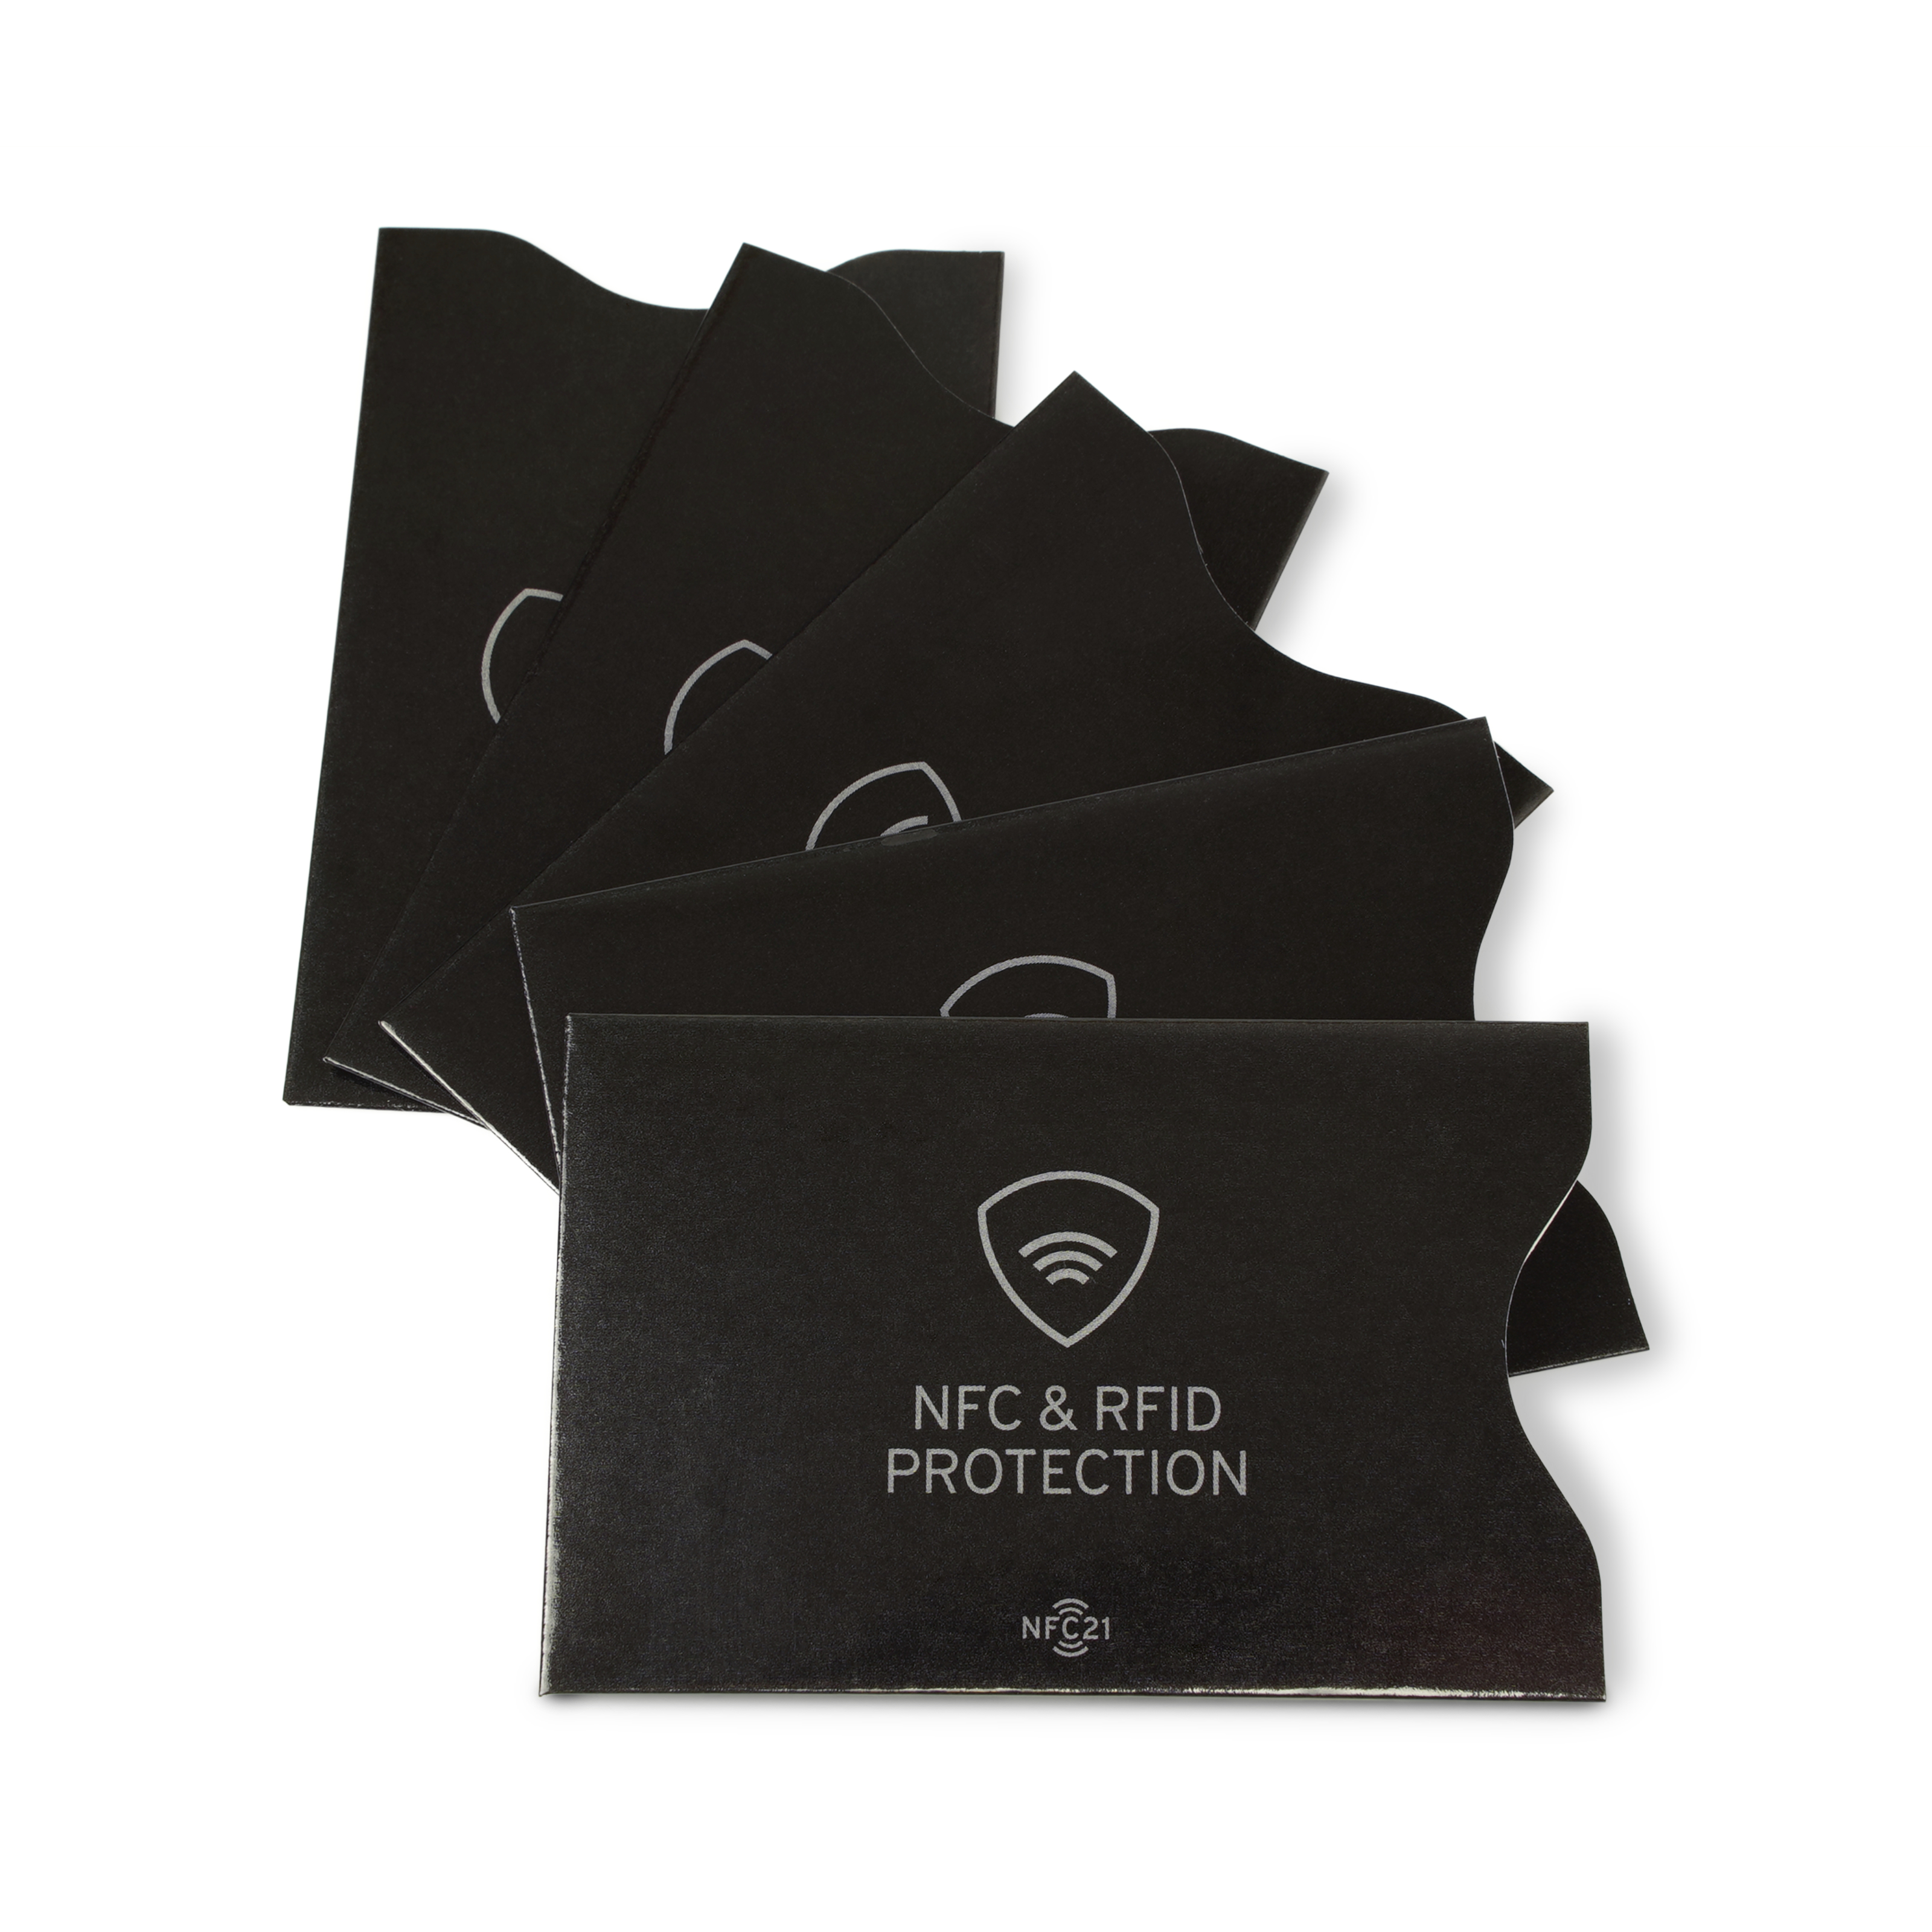 Gruppenbild mit fünf NFC- und RFID Schutzhüllen für NFC Karten in schwarz